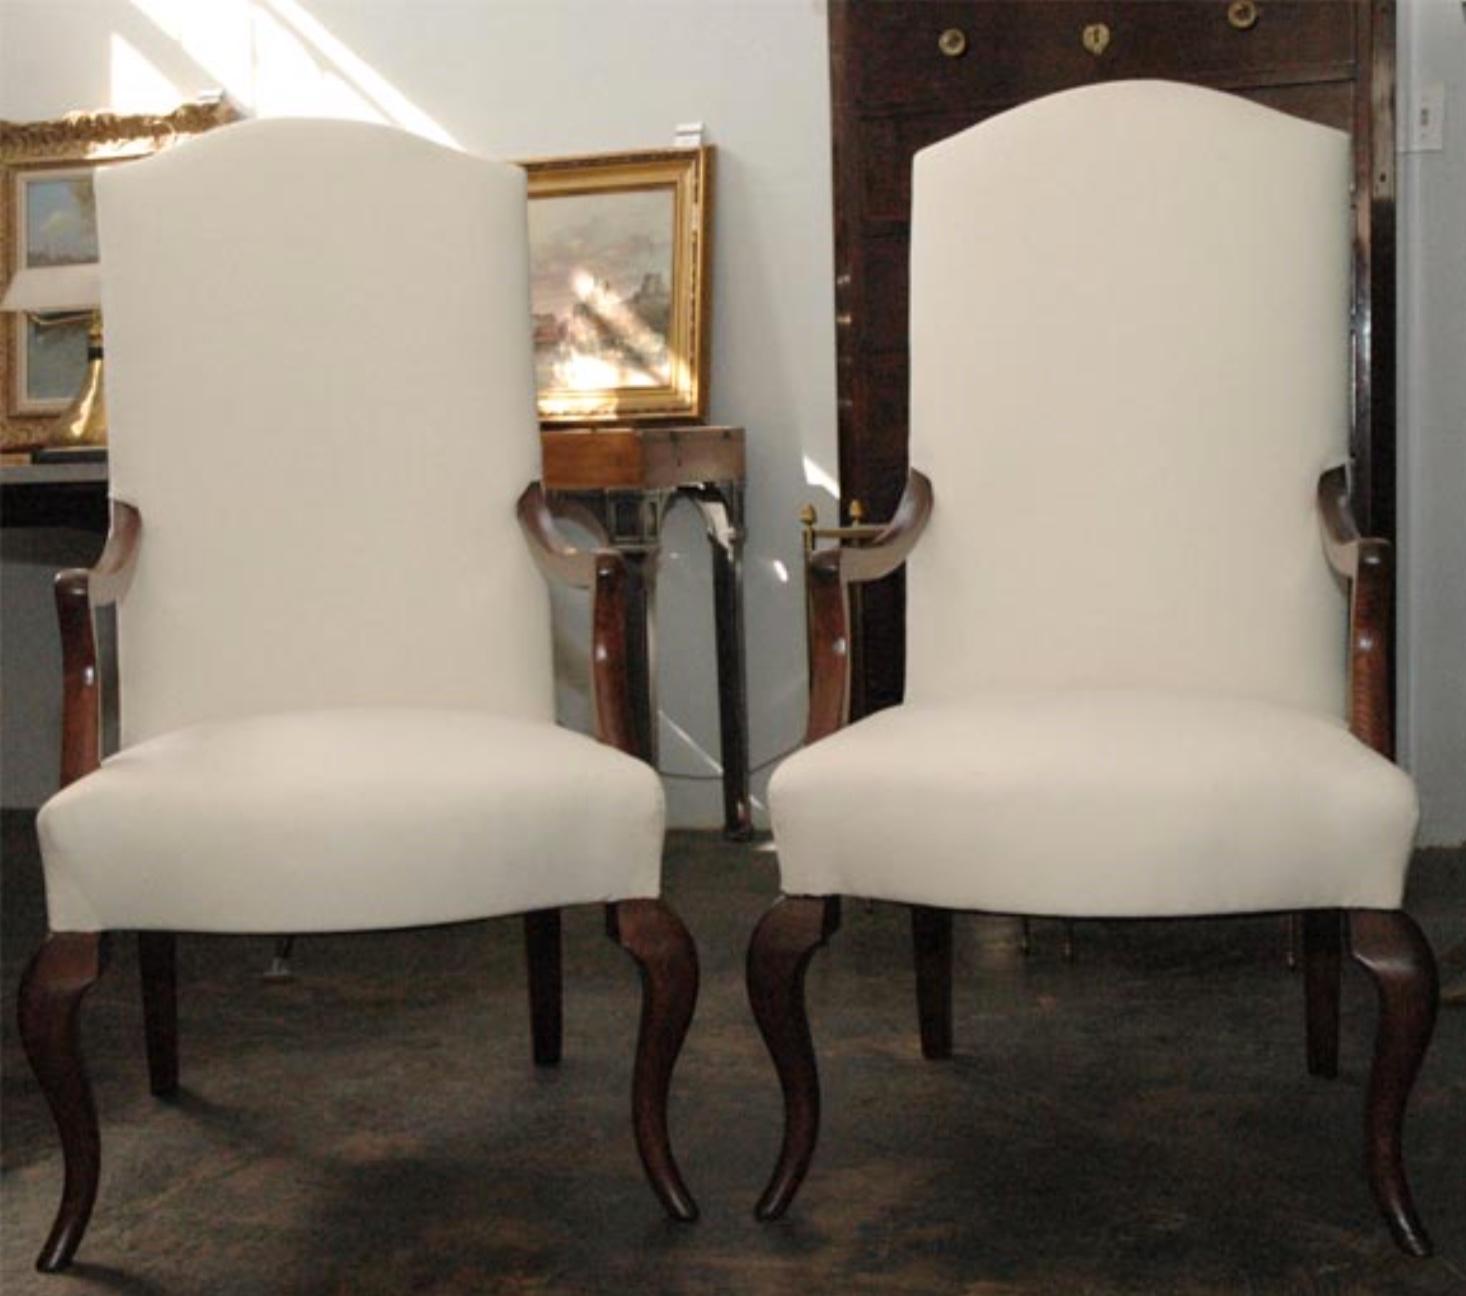 Perfekt proportioniertes Paar hoher Sessel des berühmten französischen Möbeldesigners und Innenarchitekten Jean-Charles Moreux aus den 1940er Jahren. Perfekt für ein schickes Wohnzimmer im Pariser Stil.

Referenz: Jean-Charles Moreux,